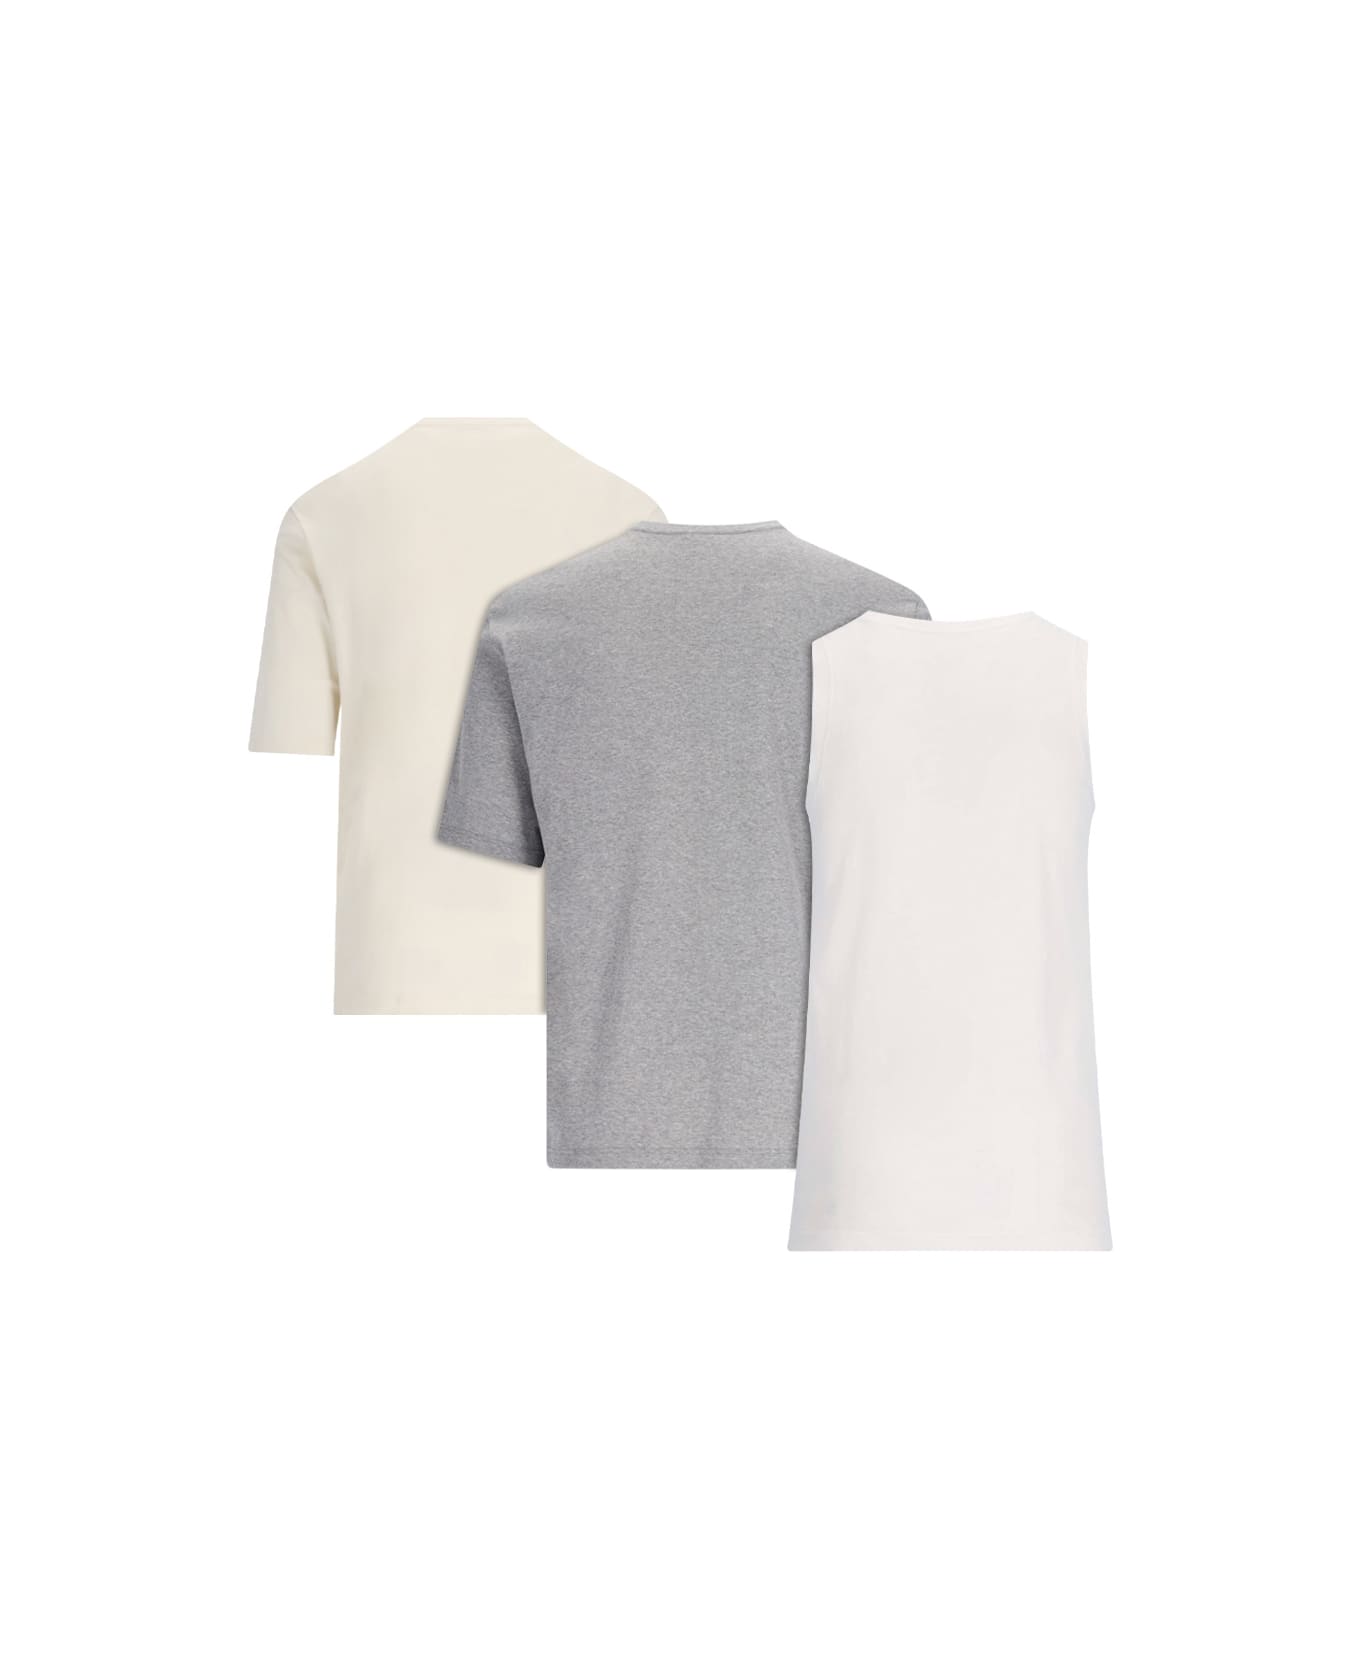 Jil Sander '3-pack' T-shirt Set - Multicolor シャツ